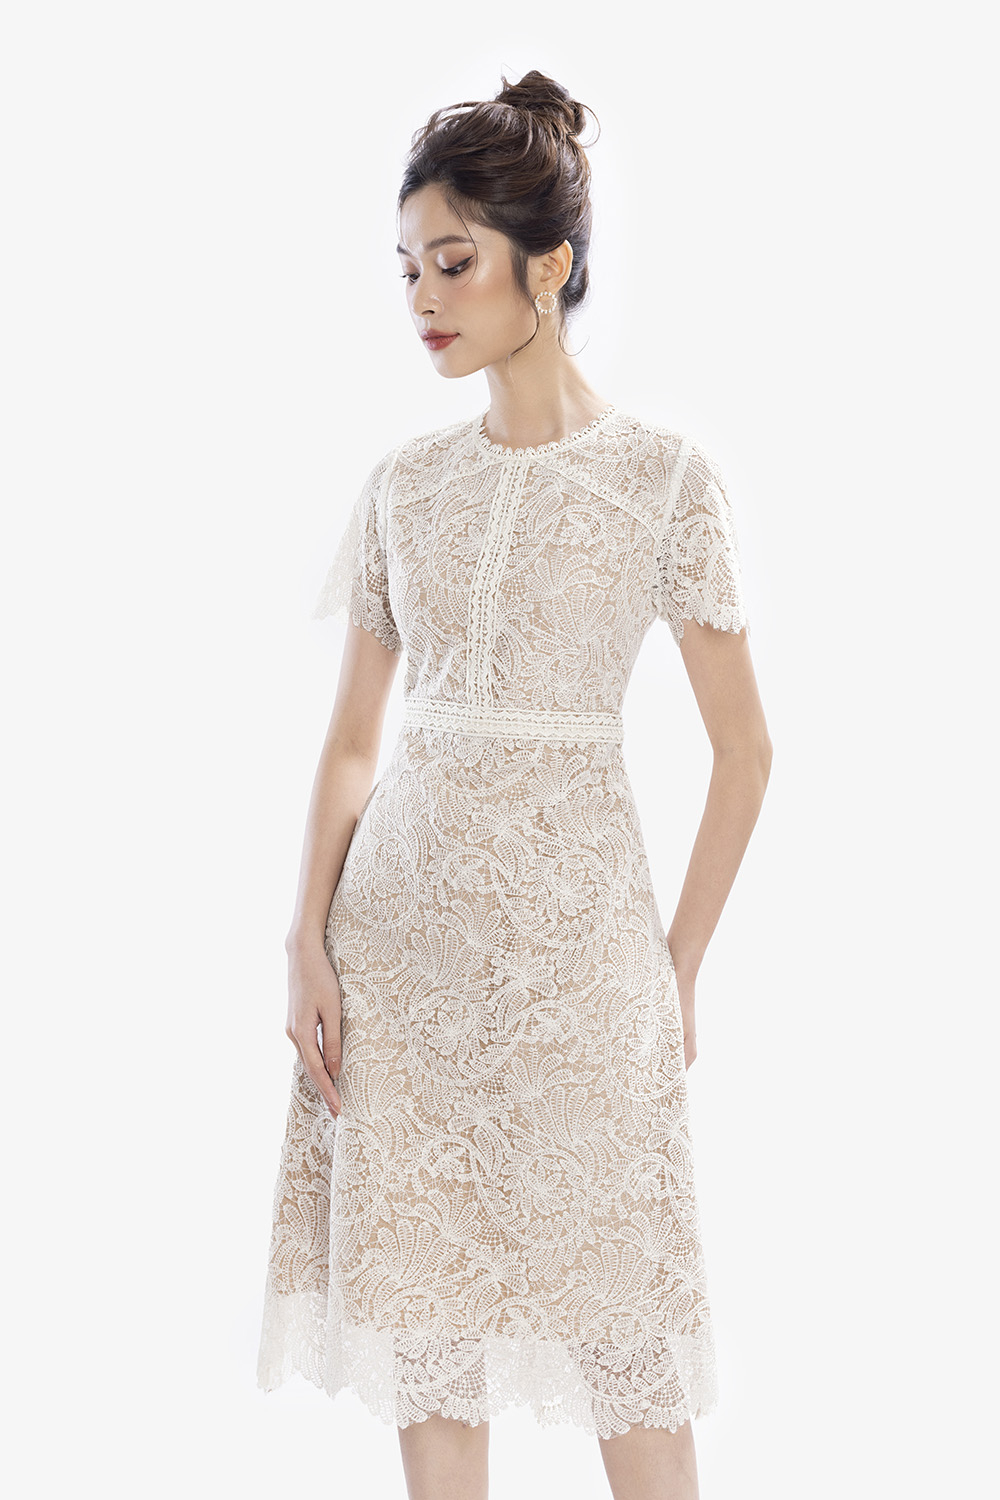 Đầm ren trắng xòe ngắn tay - Bán sỉ thời trang mỹ phẩm